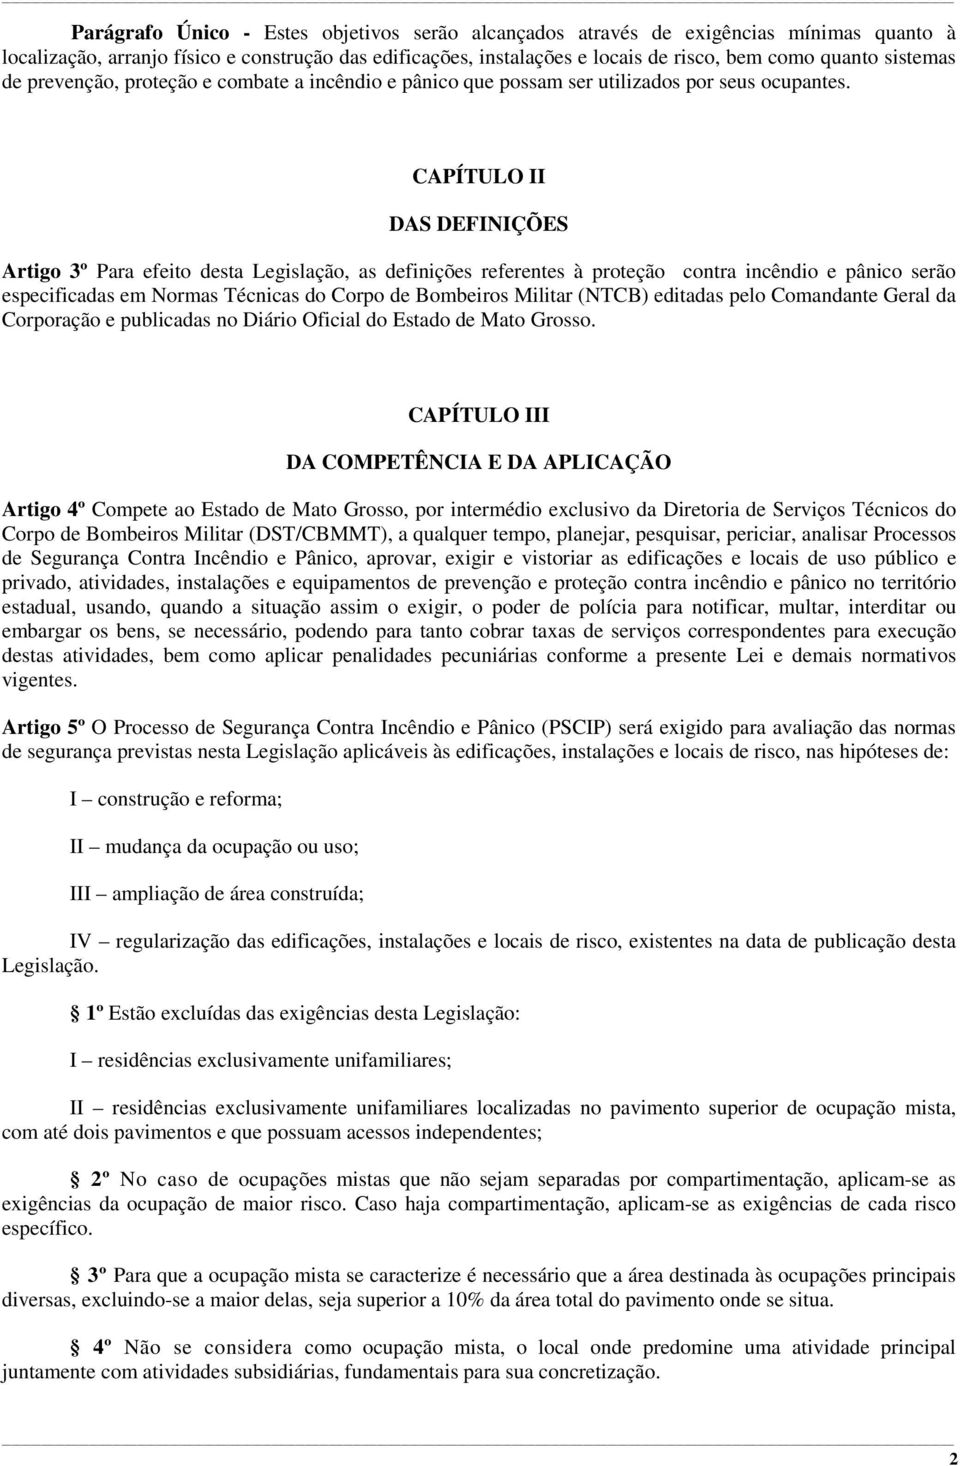 CAPÍTULO II DAS DEFINIÇÕES Artigo 3º Para efeito desta Legislação, as definições referentes à proteção contra incêndio e pânico serão especificadas em Normas Técnicas do Corpo de Bombeiros Militar